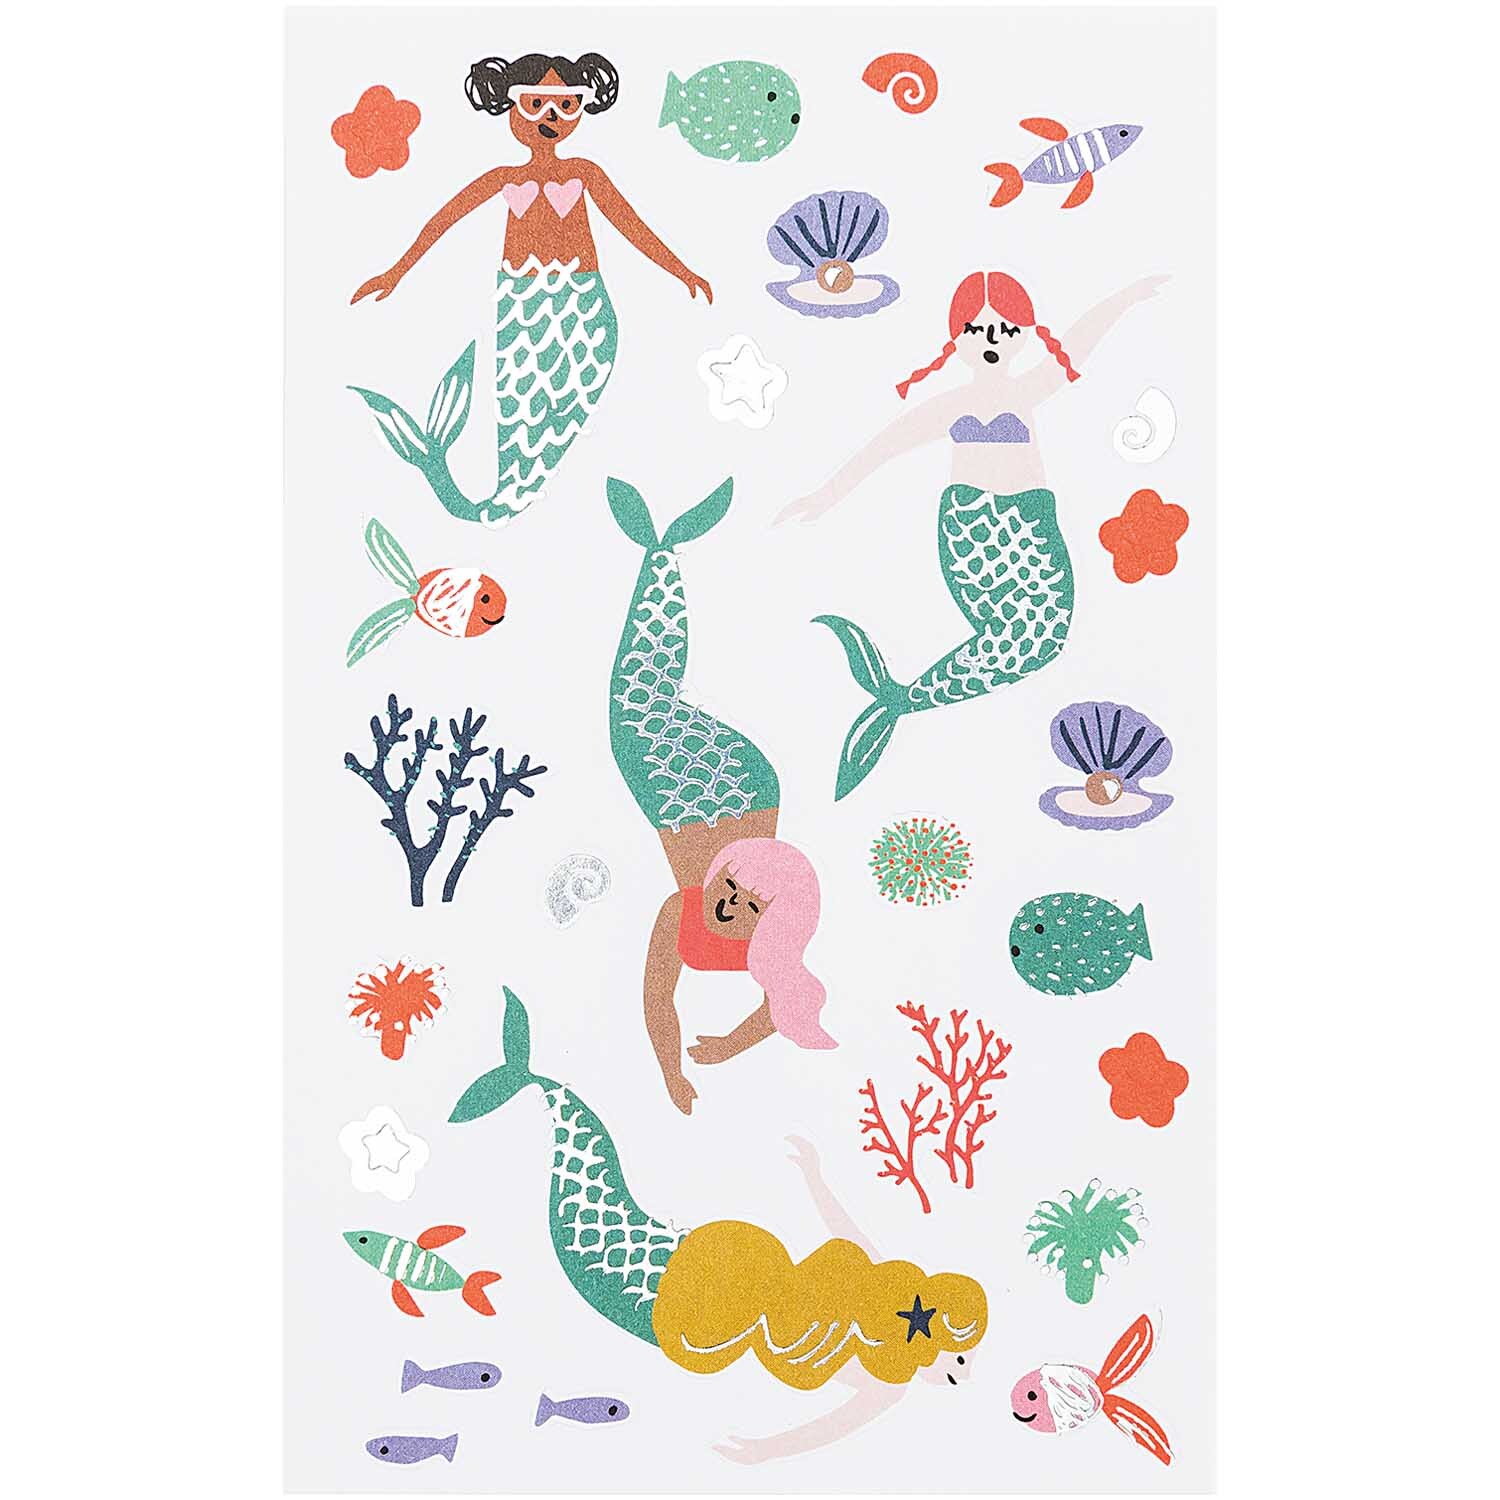 Paper Poetry Sticker Mermaid Meerjungfrauen 70 Stück